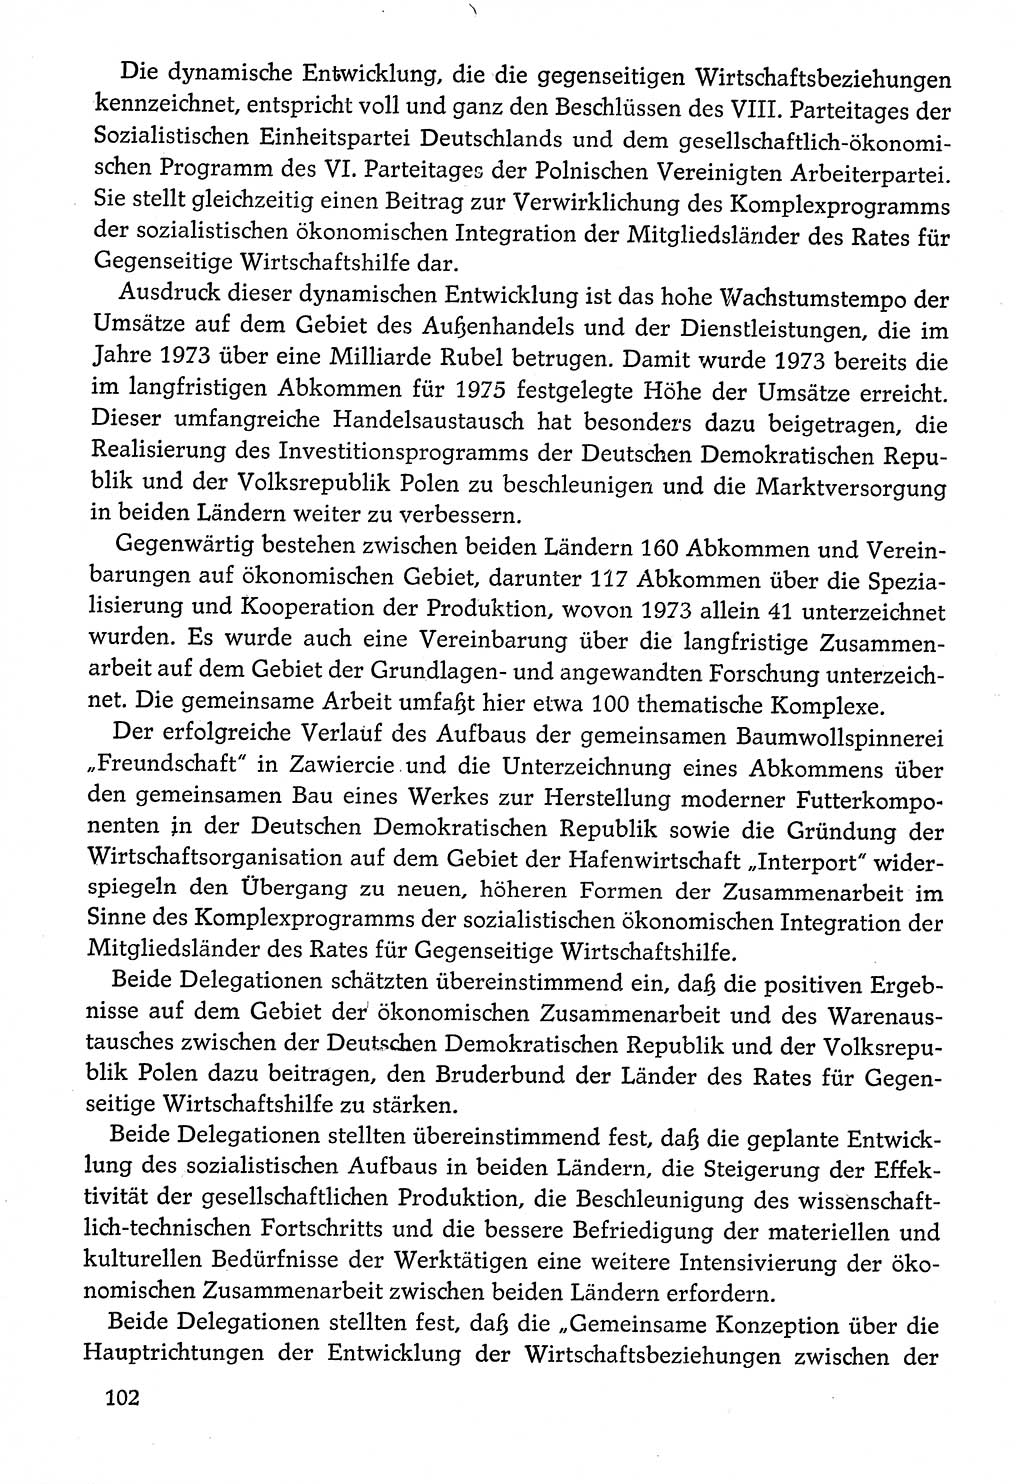 Dokumente der Sozialistischen Einheitspartei Deutschlands (SED) [Deutsche Demokratische Republik (DDR)] 1974-1975, Seite 102 (Dok. SED DDR 1978, Bd. ⅩⅤ, S. 102)